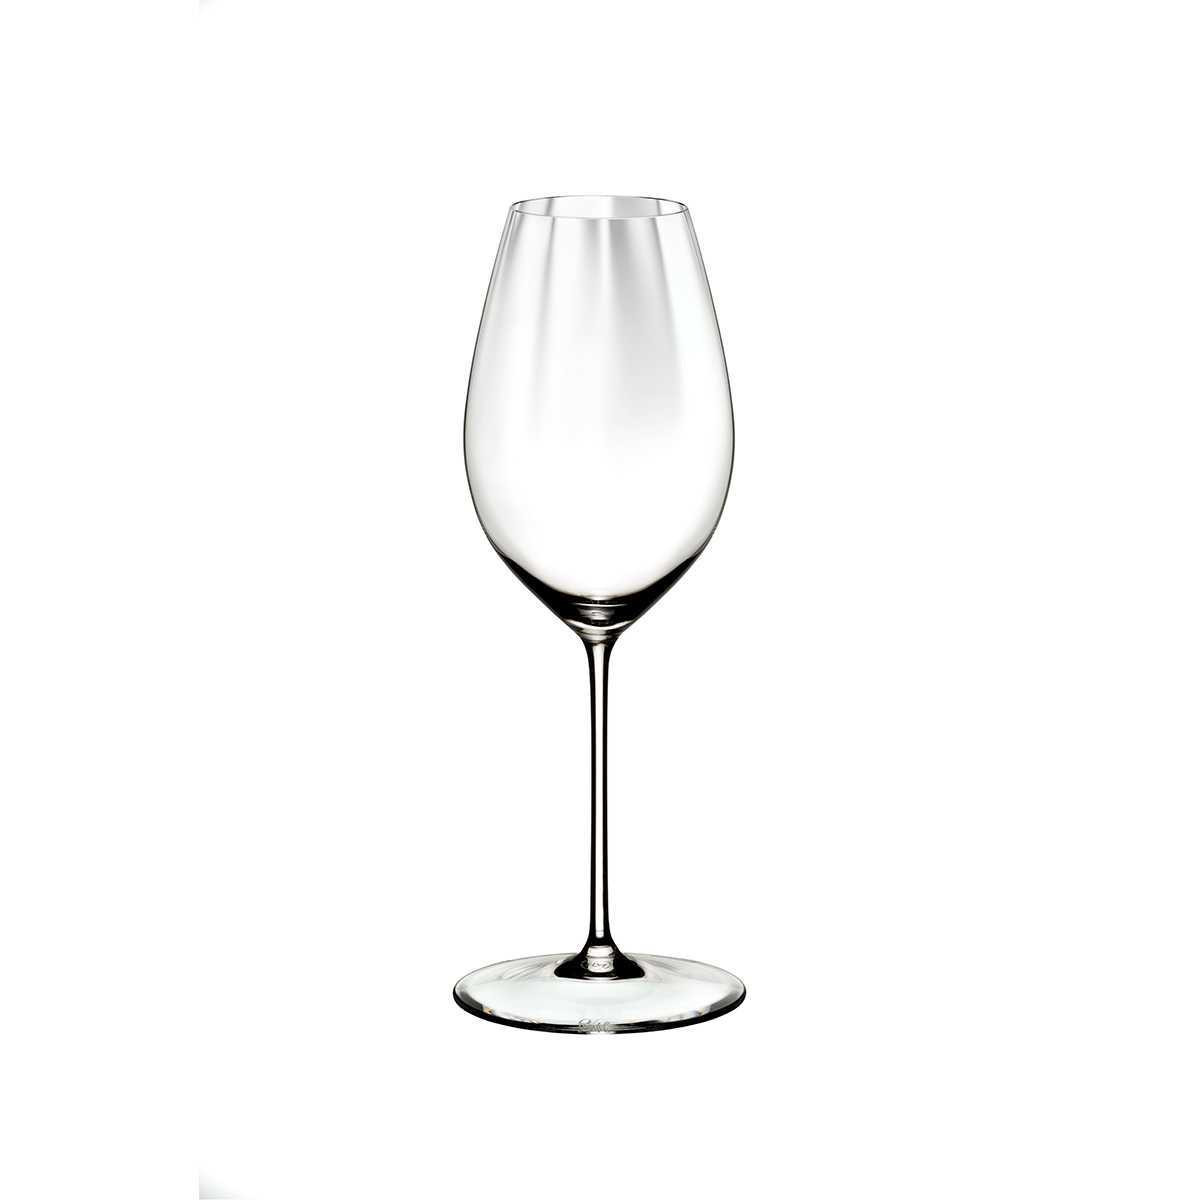 Hабір келихів для білого вина SAUVIGNON BLANC Riedel Performance, об'єм 0,375 л, 2 шт (6884/33) - Фото nav 7